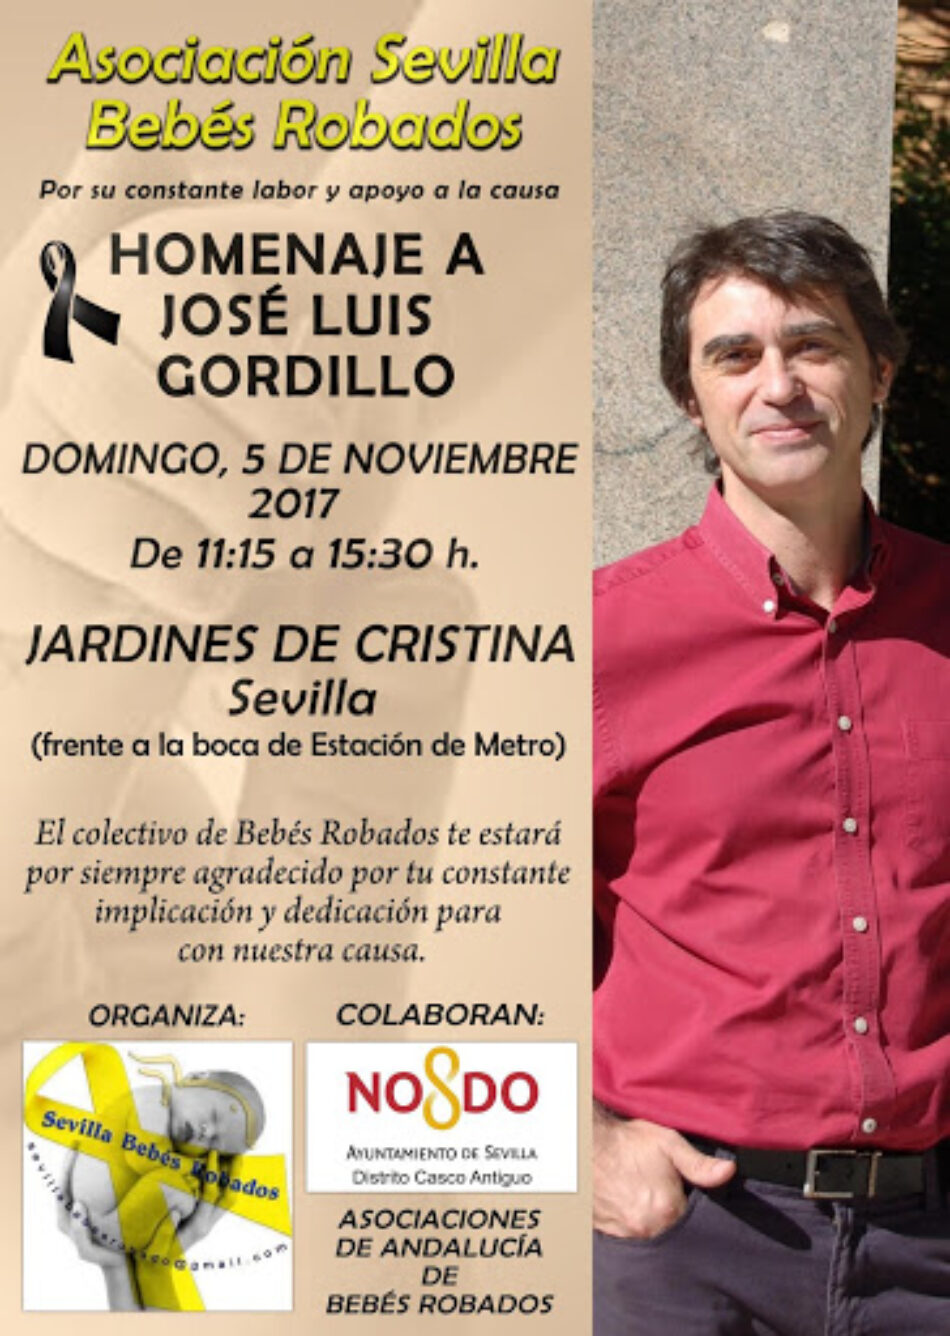 La Asociación Sevilla Bebés Robados homenajeará a Jose Luis Gordillo el 5 de noviembre